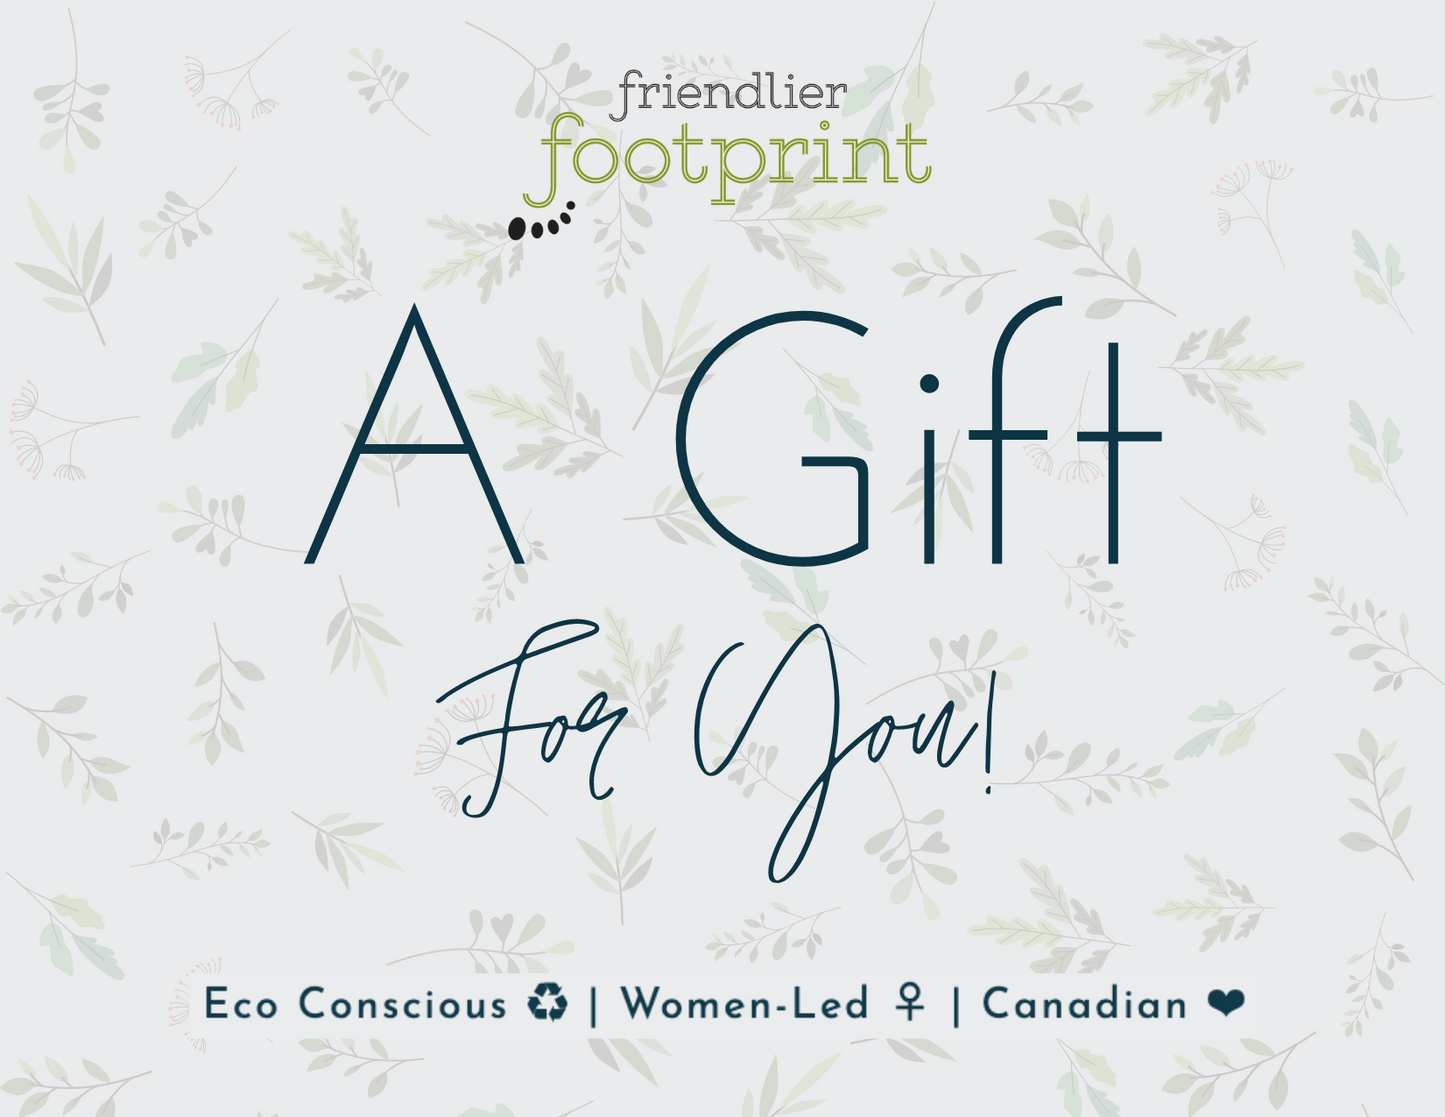 Friendlier Footprint Gift Card 🌳